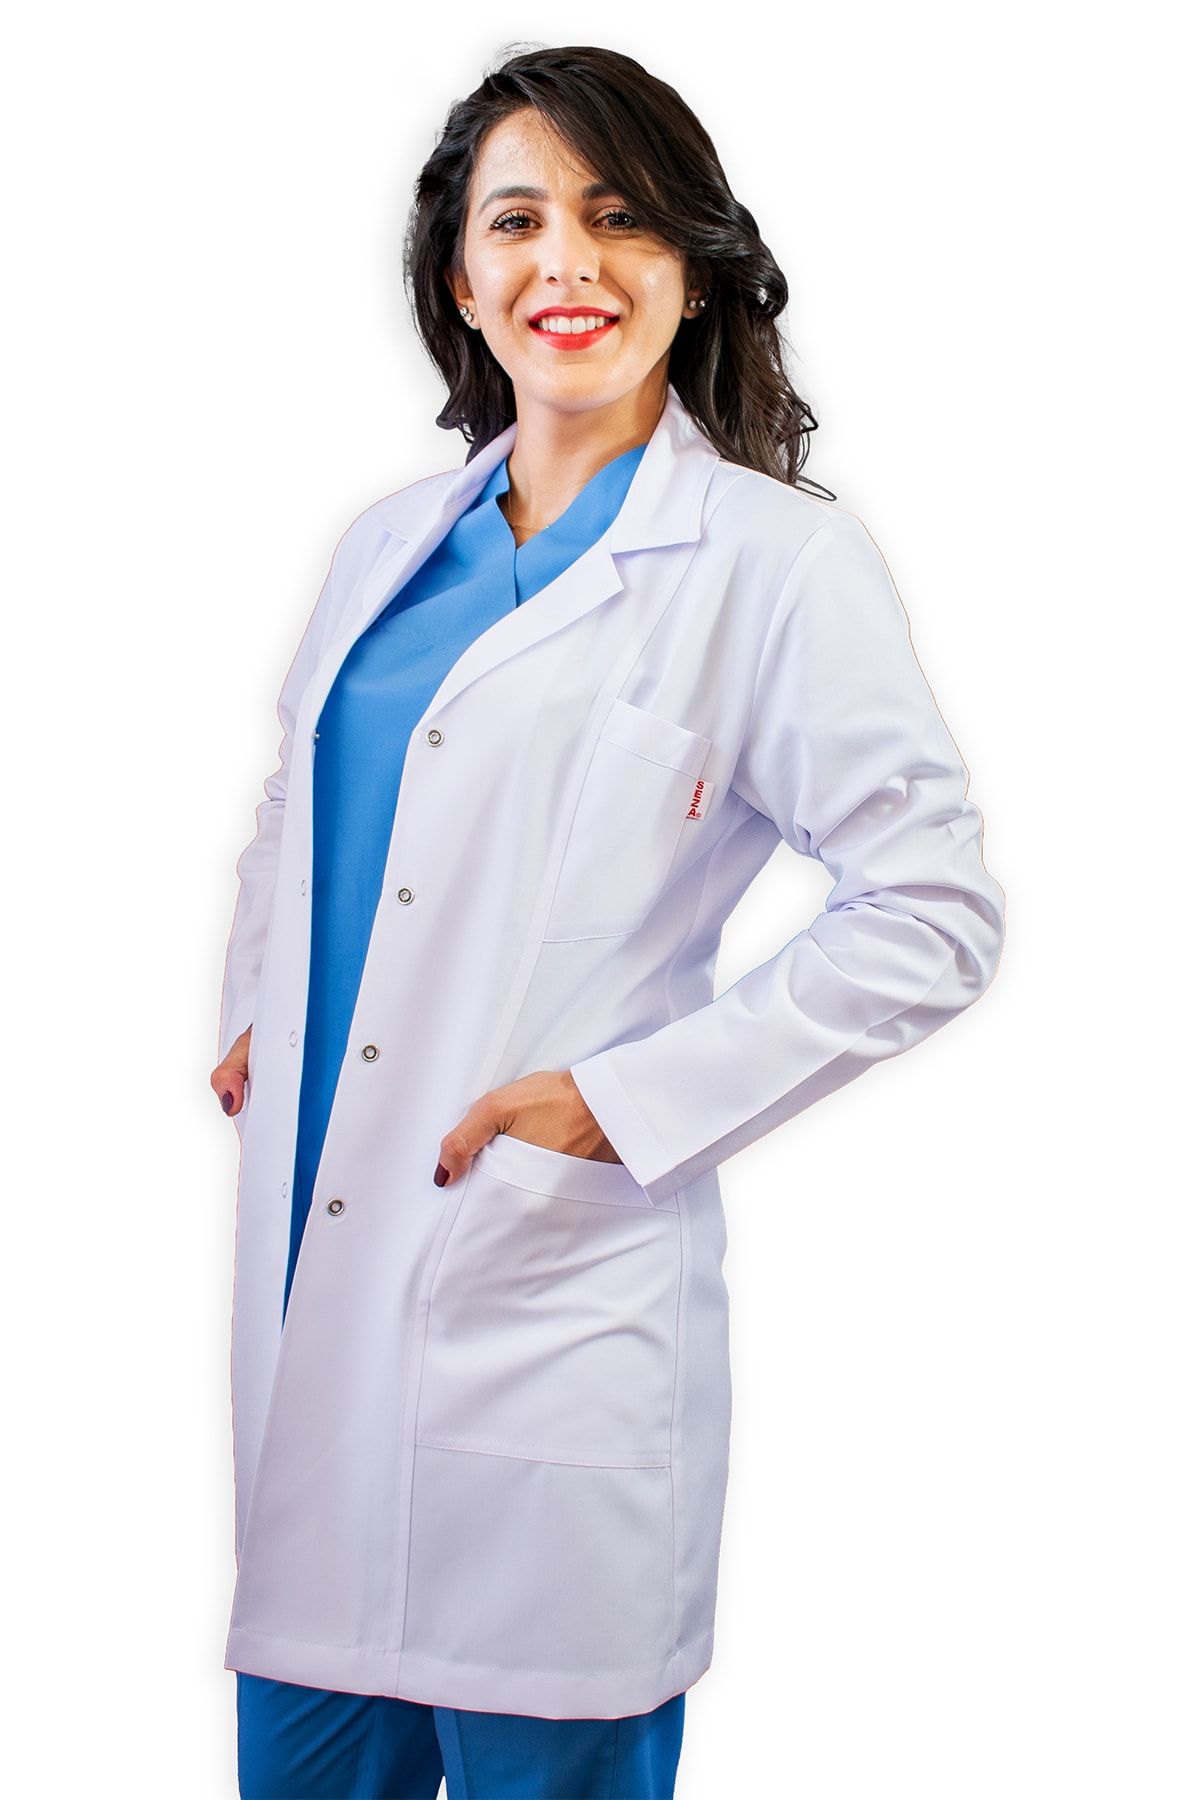 SEZA TEKSTİL Gömlek Yaka Orta Boy Beyaz Bayan Doktor Öğretmen Hemşire Laboratuvar Önlüğü